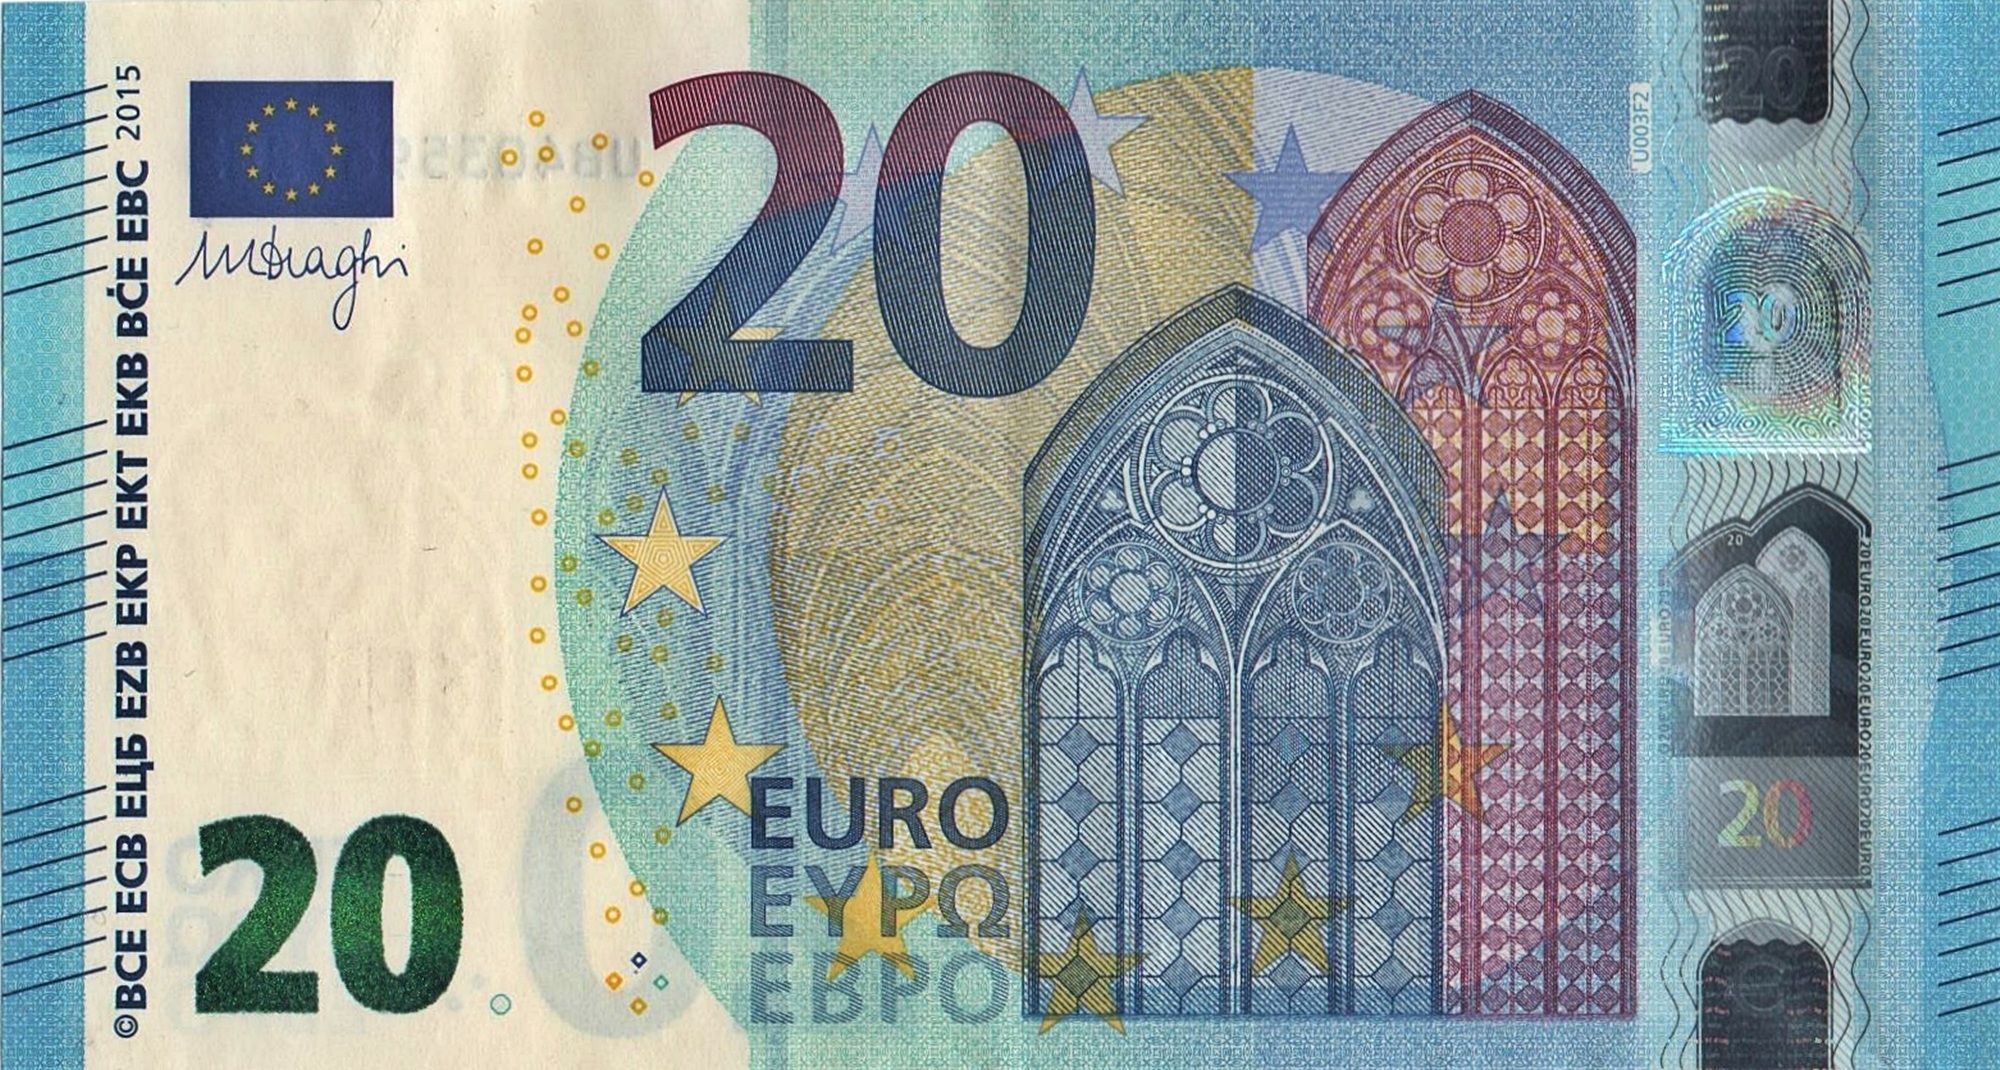 Cual es el billete mas grande en euros